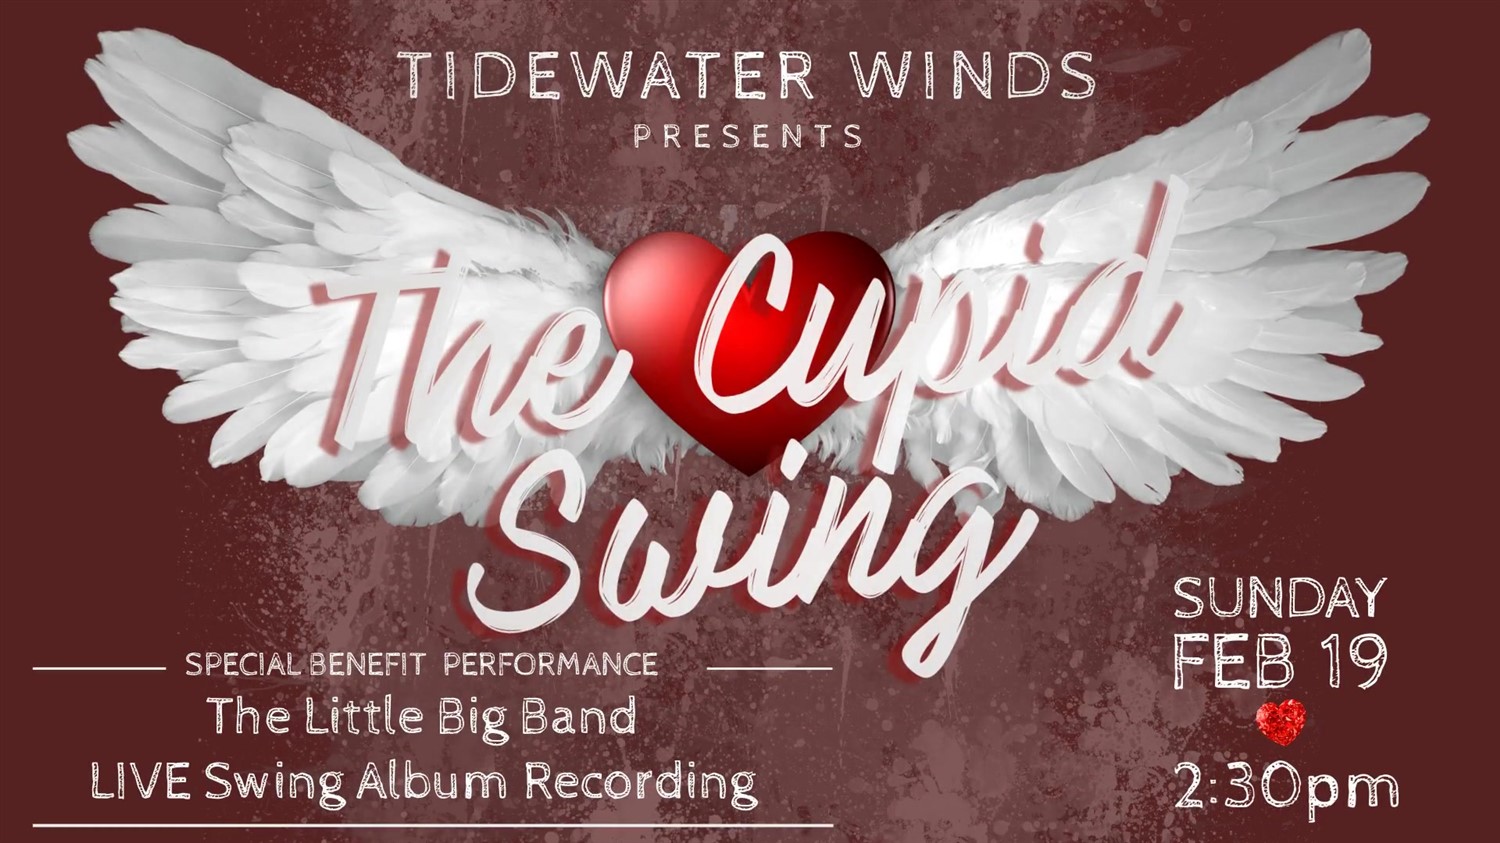 The Cupid Swing TIDEWATER WINDS CONCERT on feb. 19, 14:30@FFX Theatre - Elegir asientoCompra entradas y obtén información enFamily Fun Xperience tickets.ffxshow.org